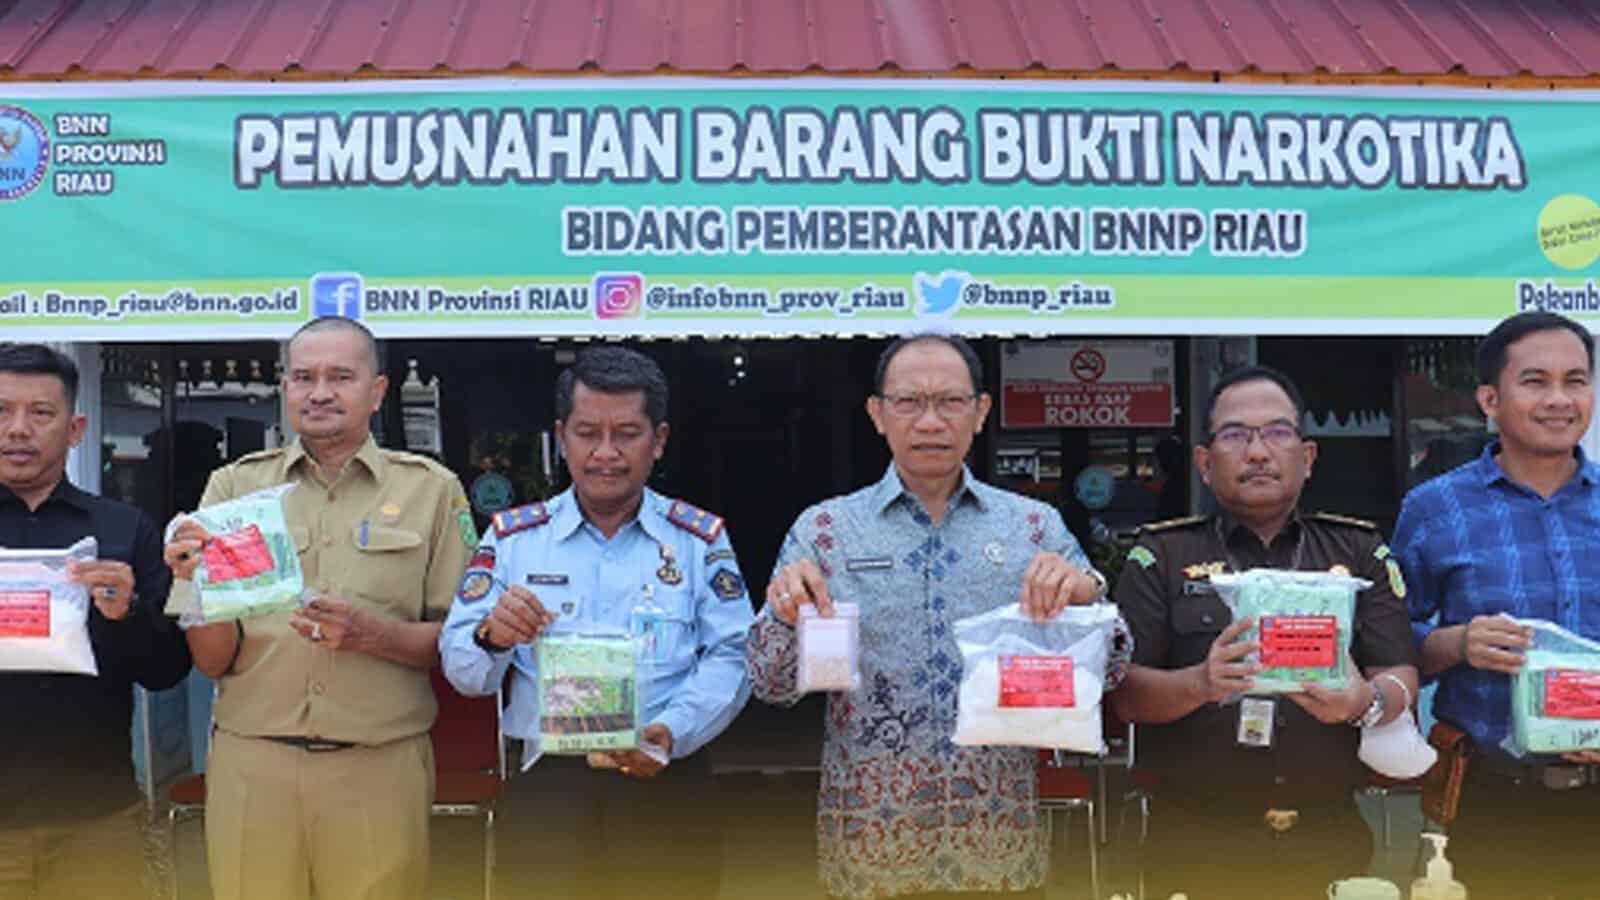 Operasi Sukses! BNN Provinsi Riau Pemusnahkan 5 Kg Sabu dan 430 Butir Ekstasi untuk Berantas Peredaran Narkotika